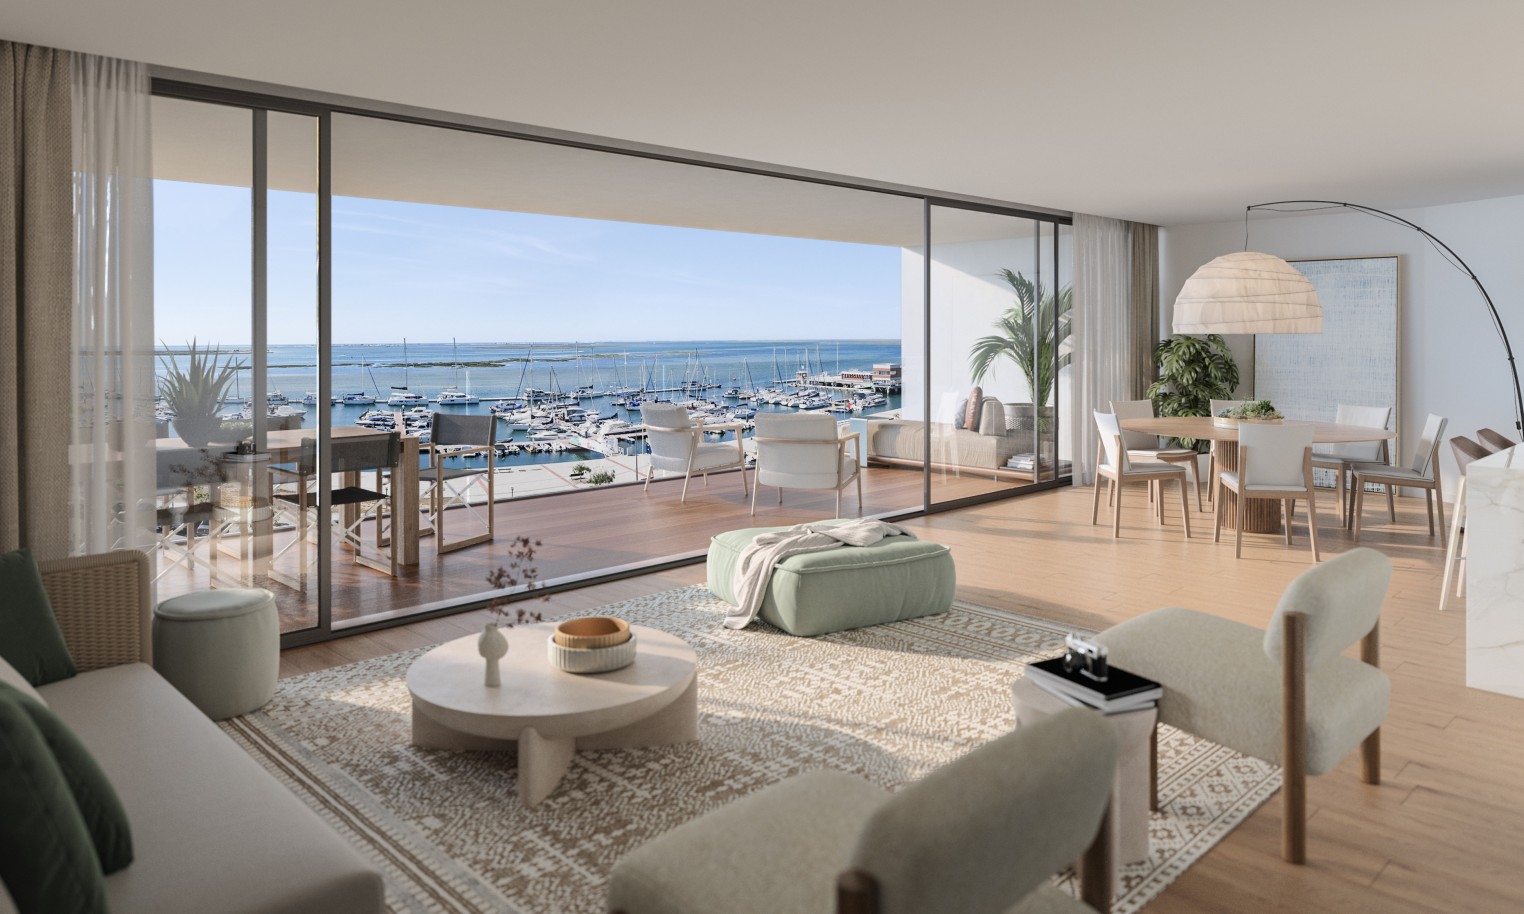 Appartements neufs avec vue sur mer, 1, 2 & 3 chambres, à vendre à Olhão, Algarve_243855